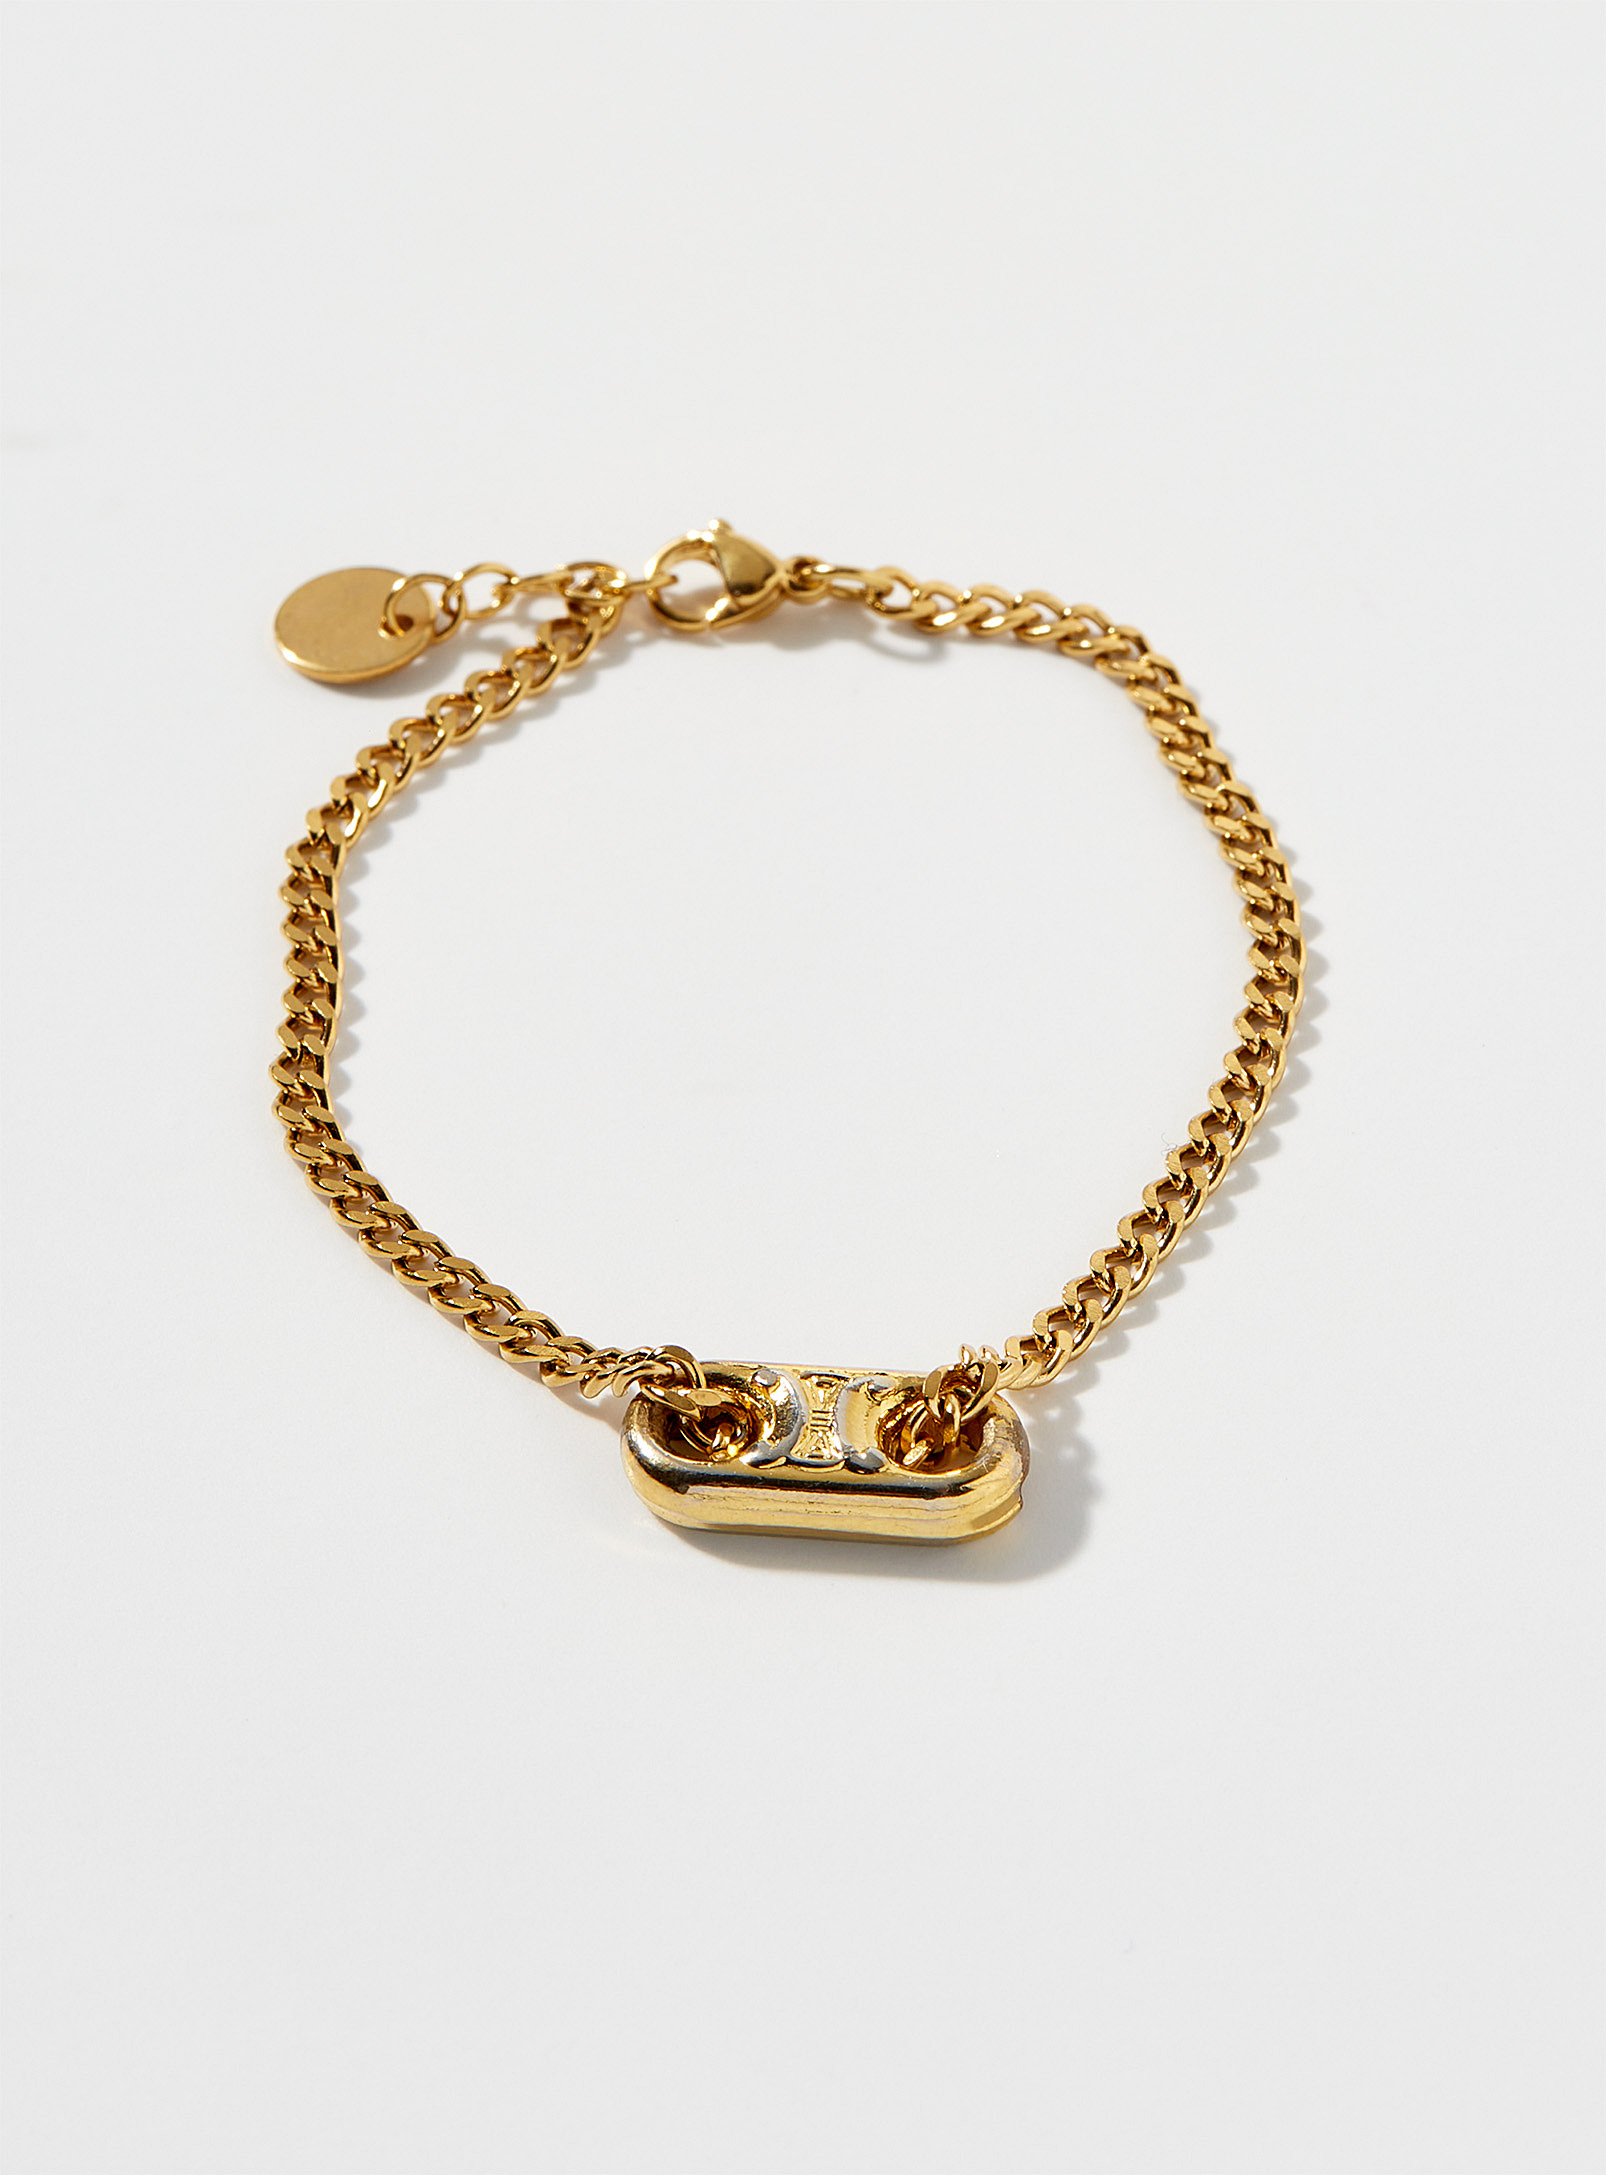 Luxury Story - Le bracelet breloque Celine suprarecyclé